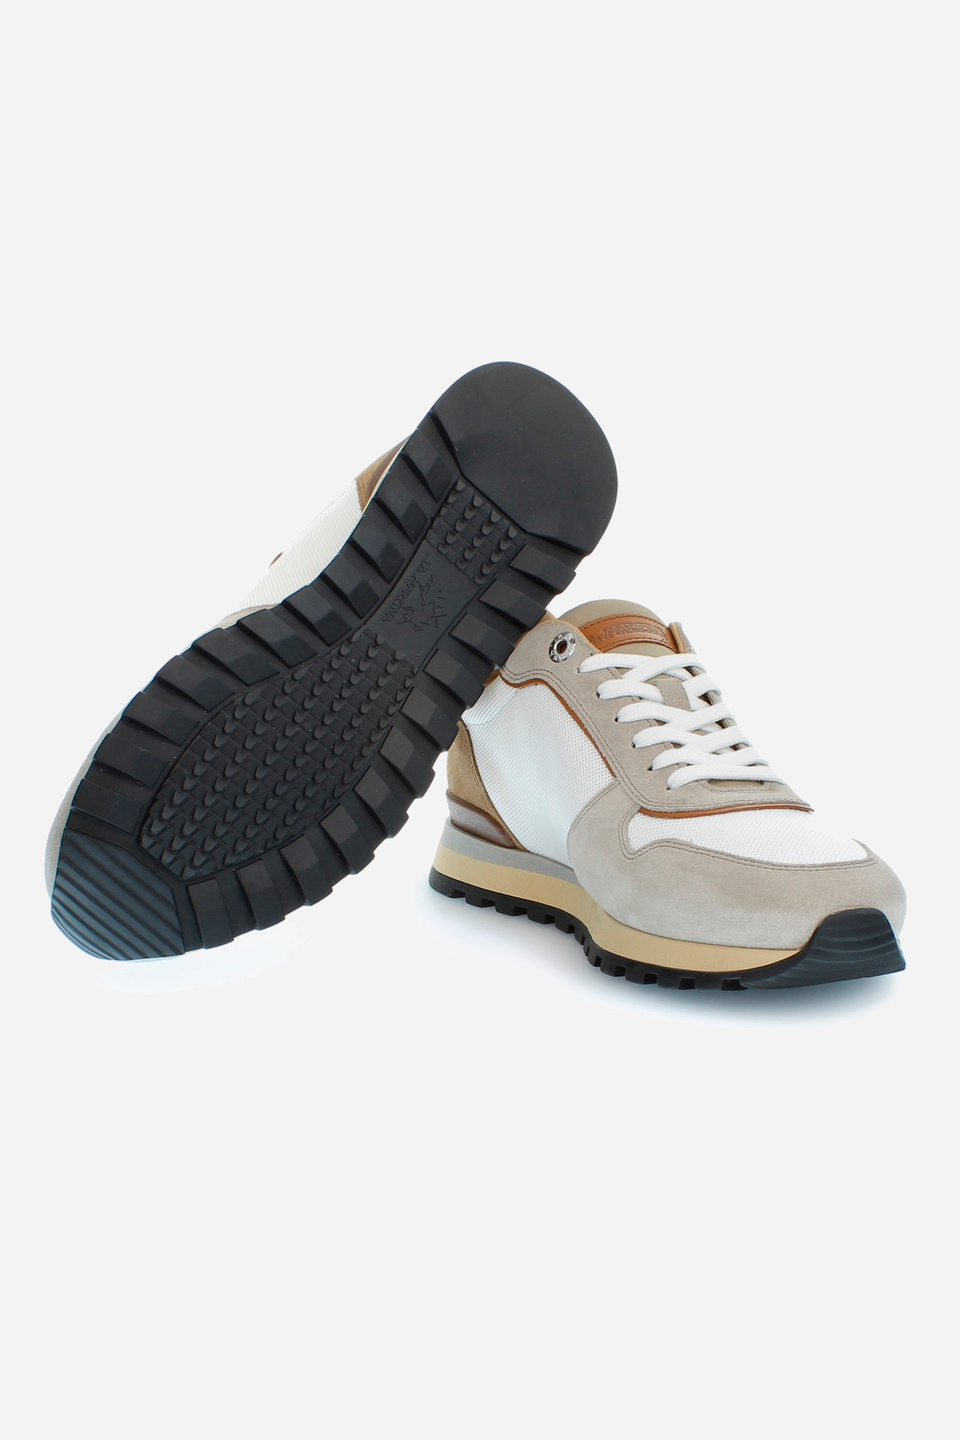 Herren-Sneaker aus Canvas und mehrfarbigem Wildleder | La Martina - Official Online Shop